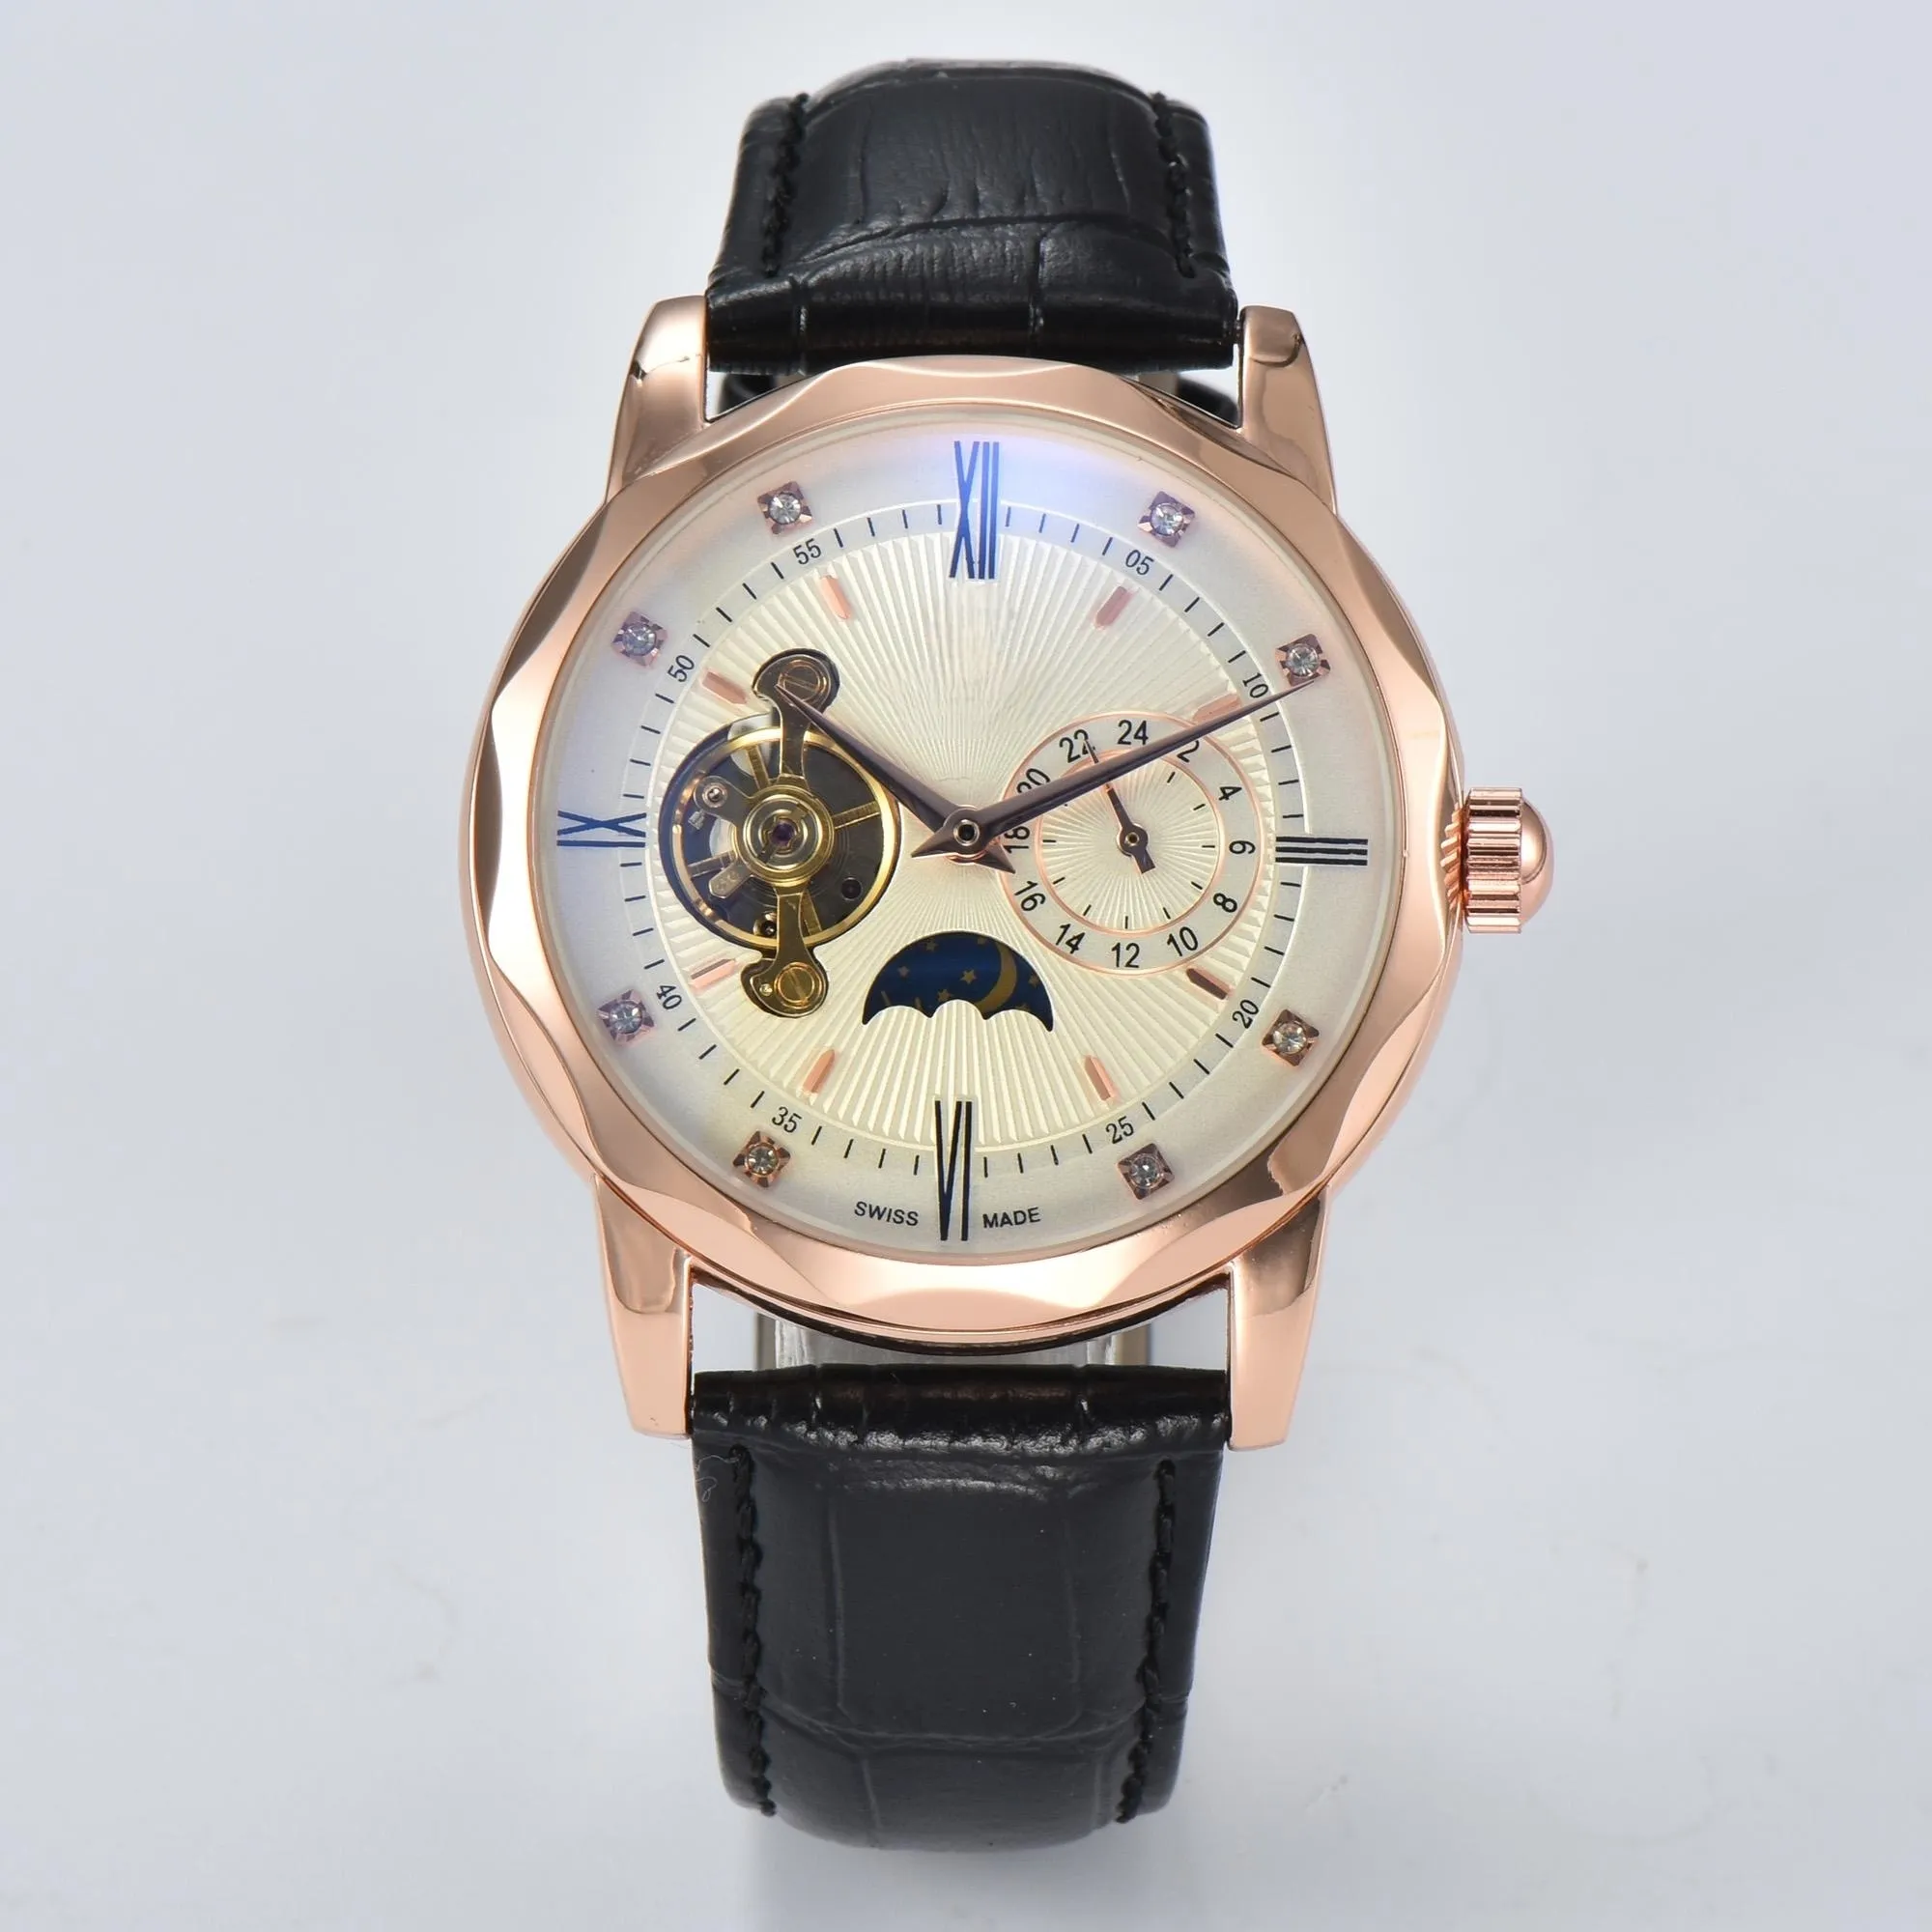 Markenuhr, automatisches mechanisches Uhrwerk, Designer-Uhren, komplett aus Edelstahl 904L, wasserdicht, Montre De Luxe, Business-Armbanduhr, lässiges Armband